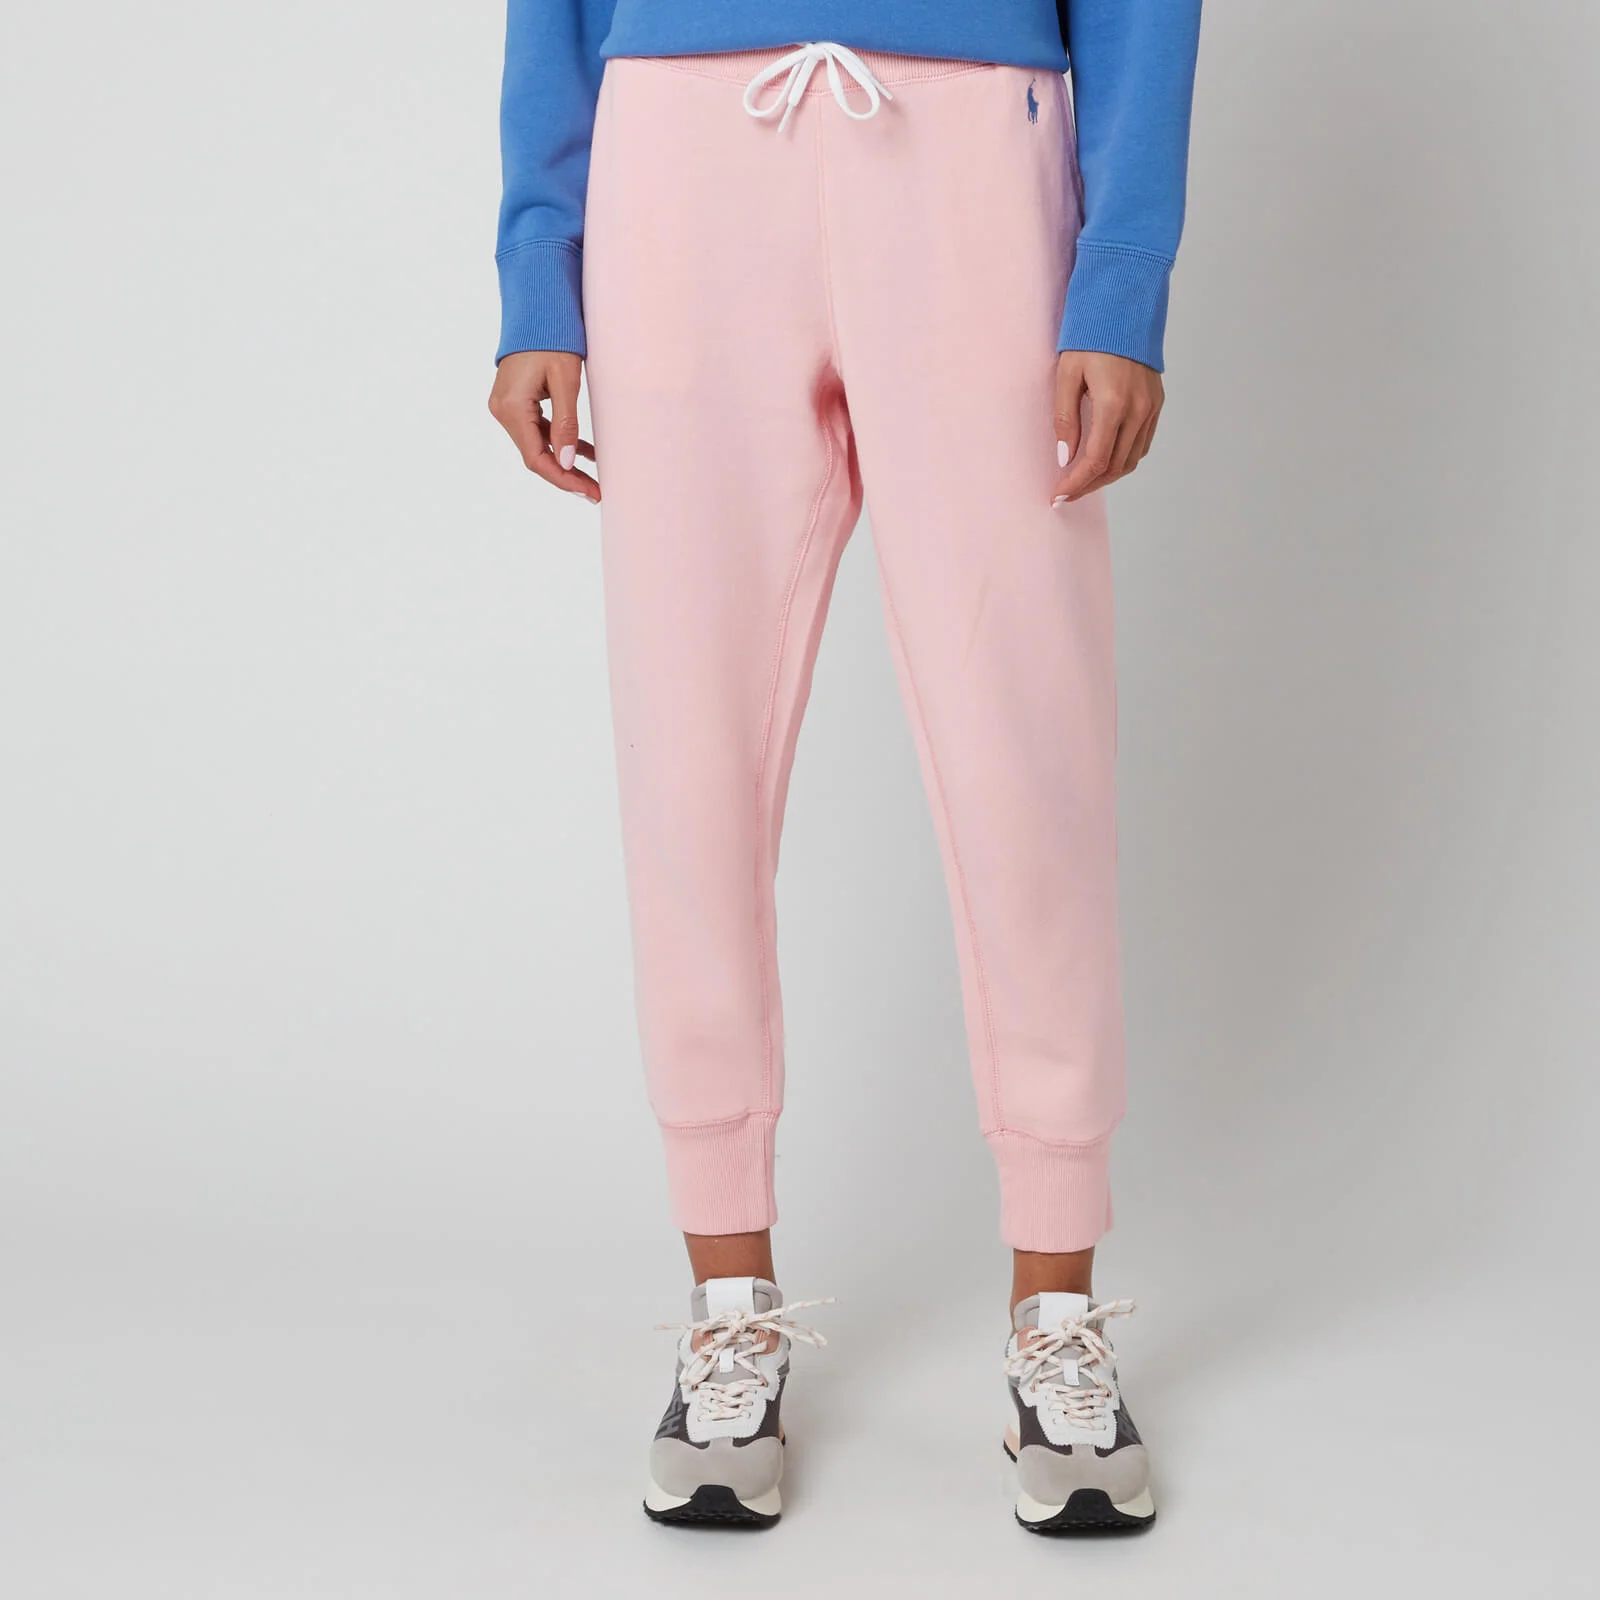 Polo Ralph Lauren Women's Logo Sweatpants - Resort Pink Image 1